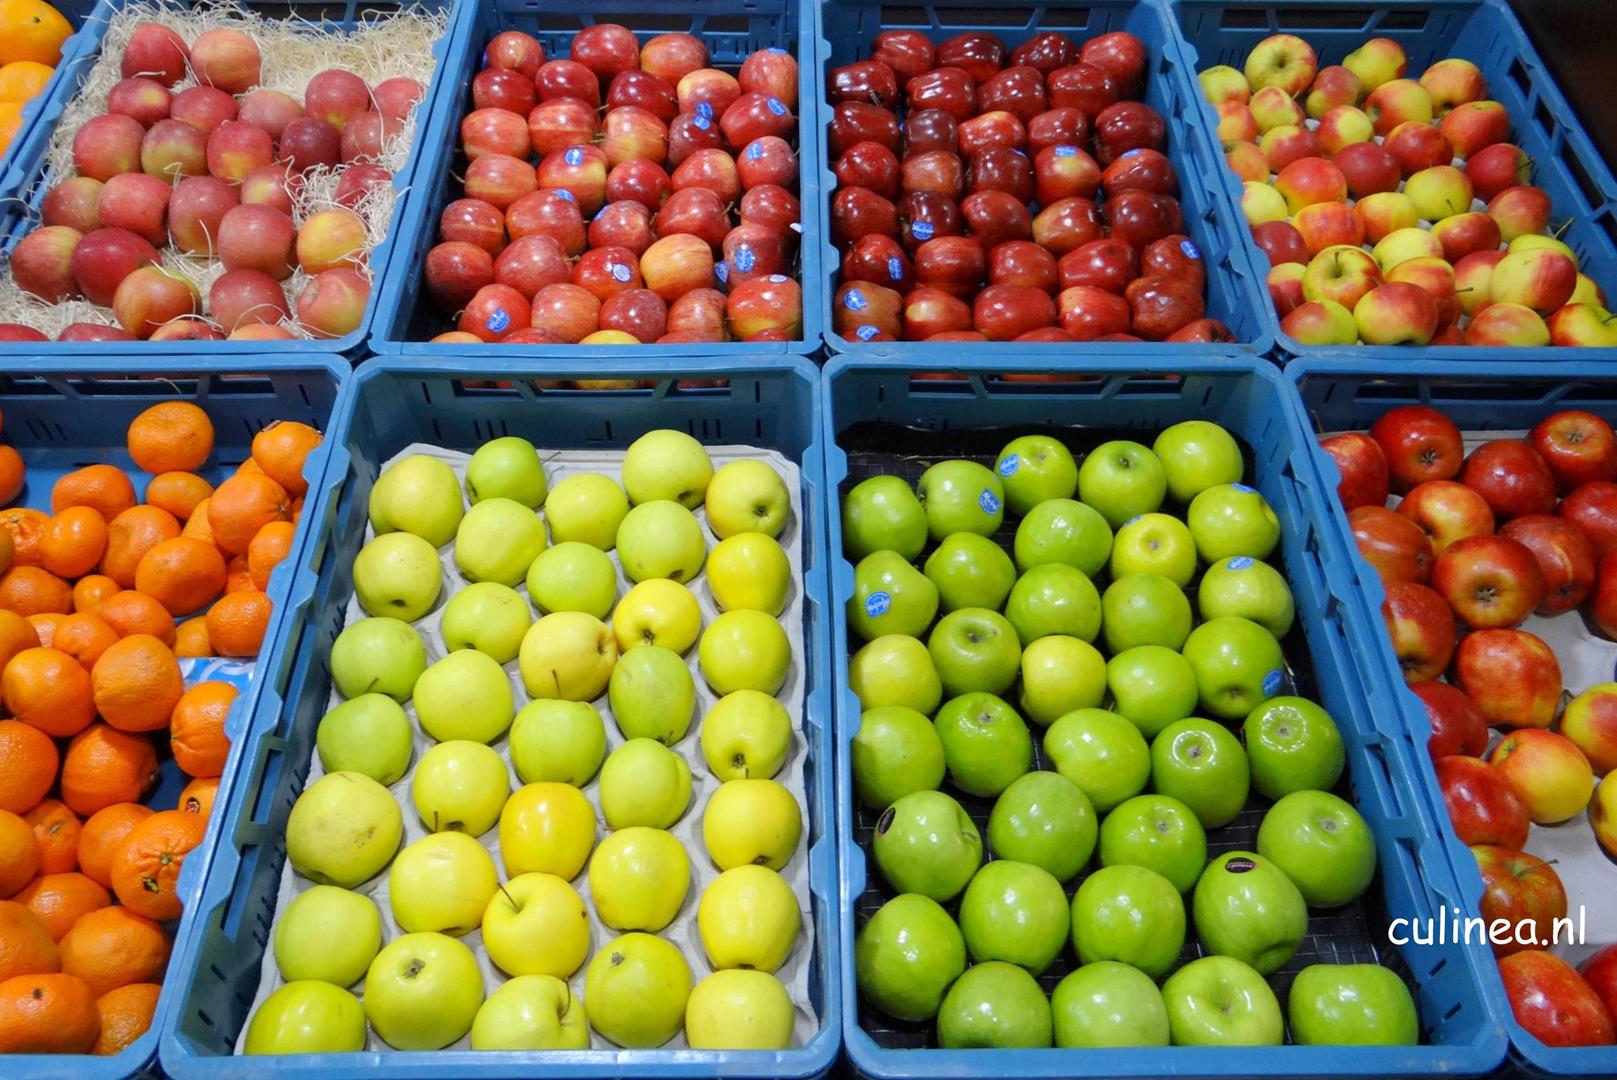 Voldoen Onweersbui Accountant Markt of supermarkt: Waar is fruit goedkoper? - Culinea.nl;